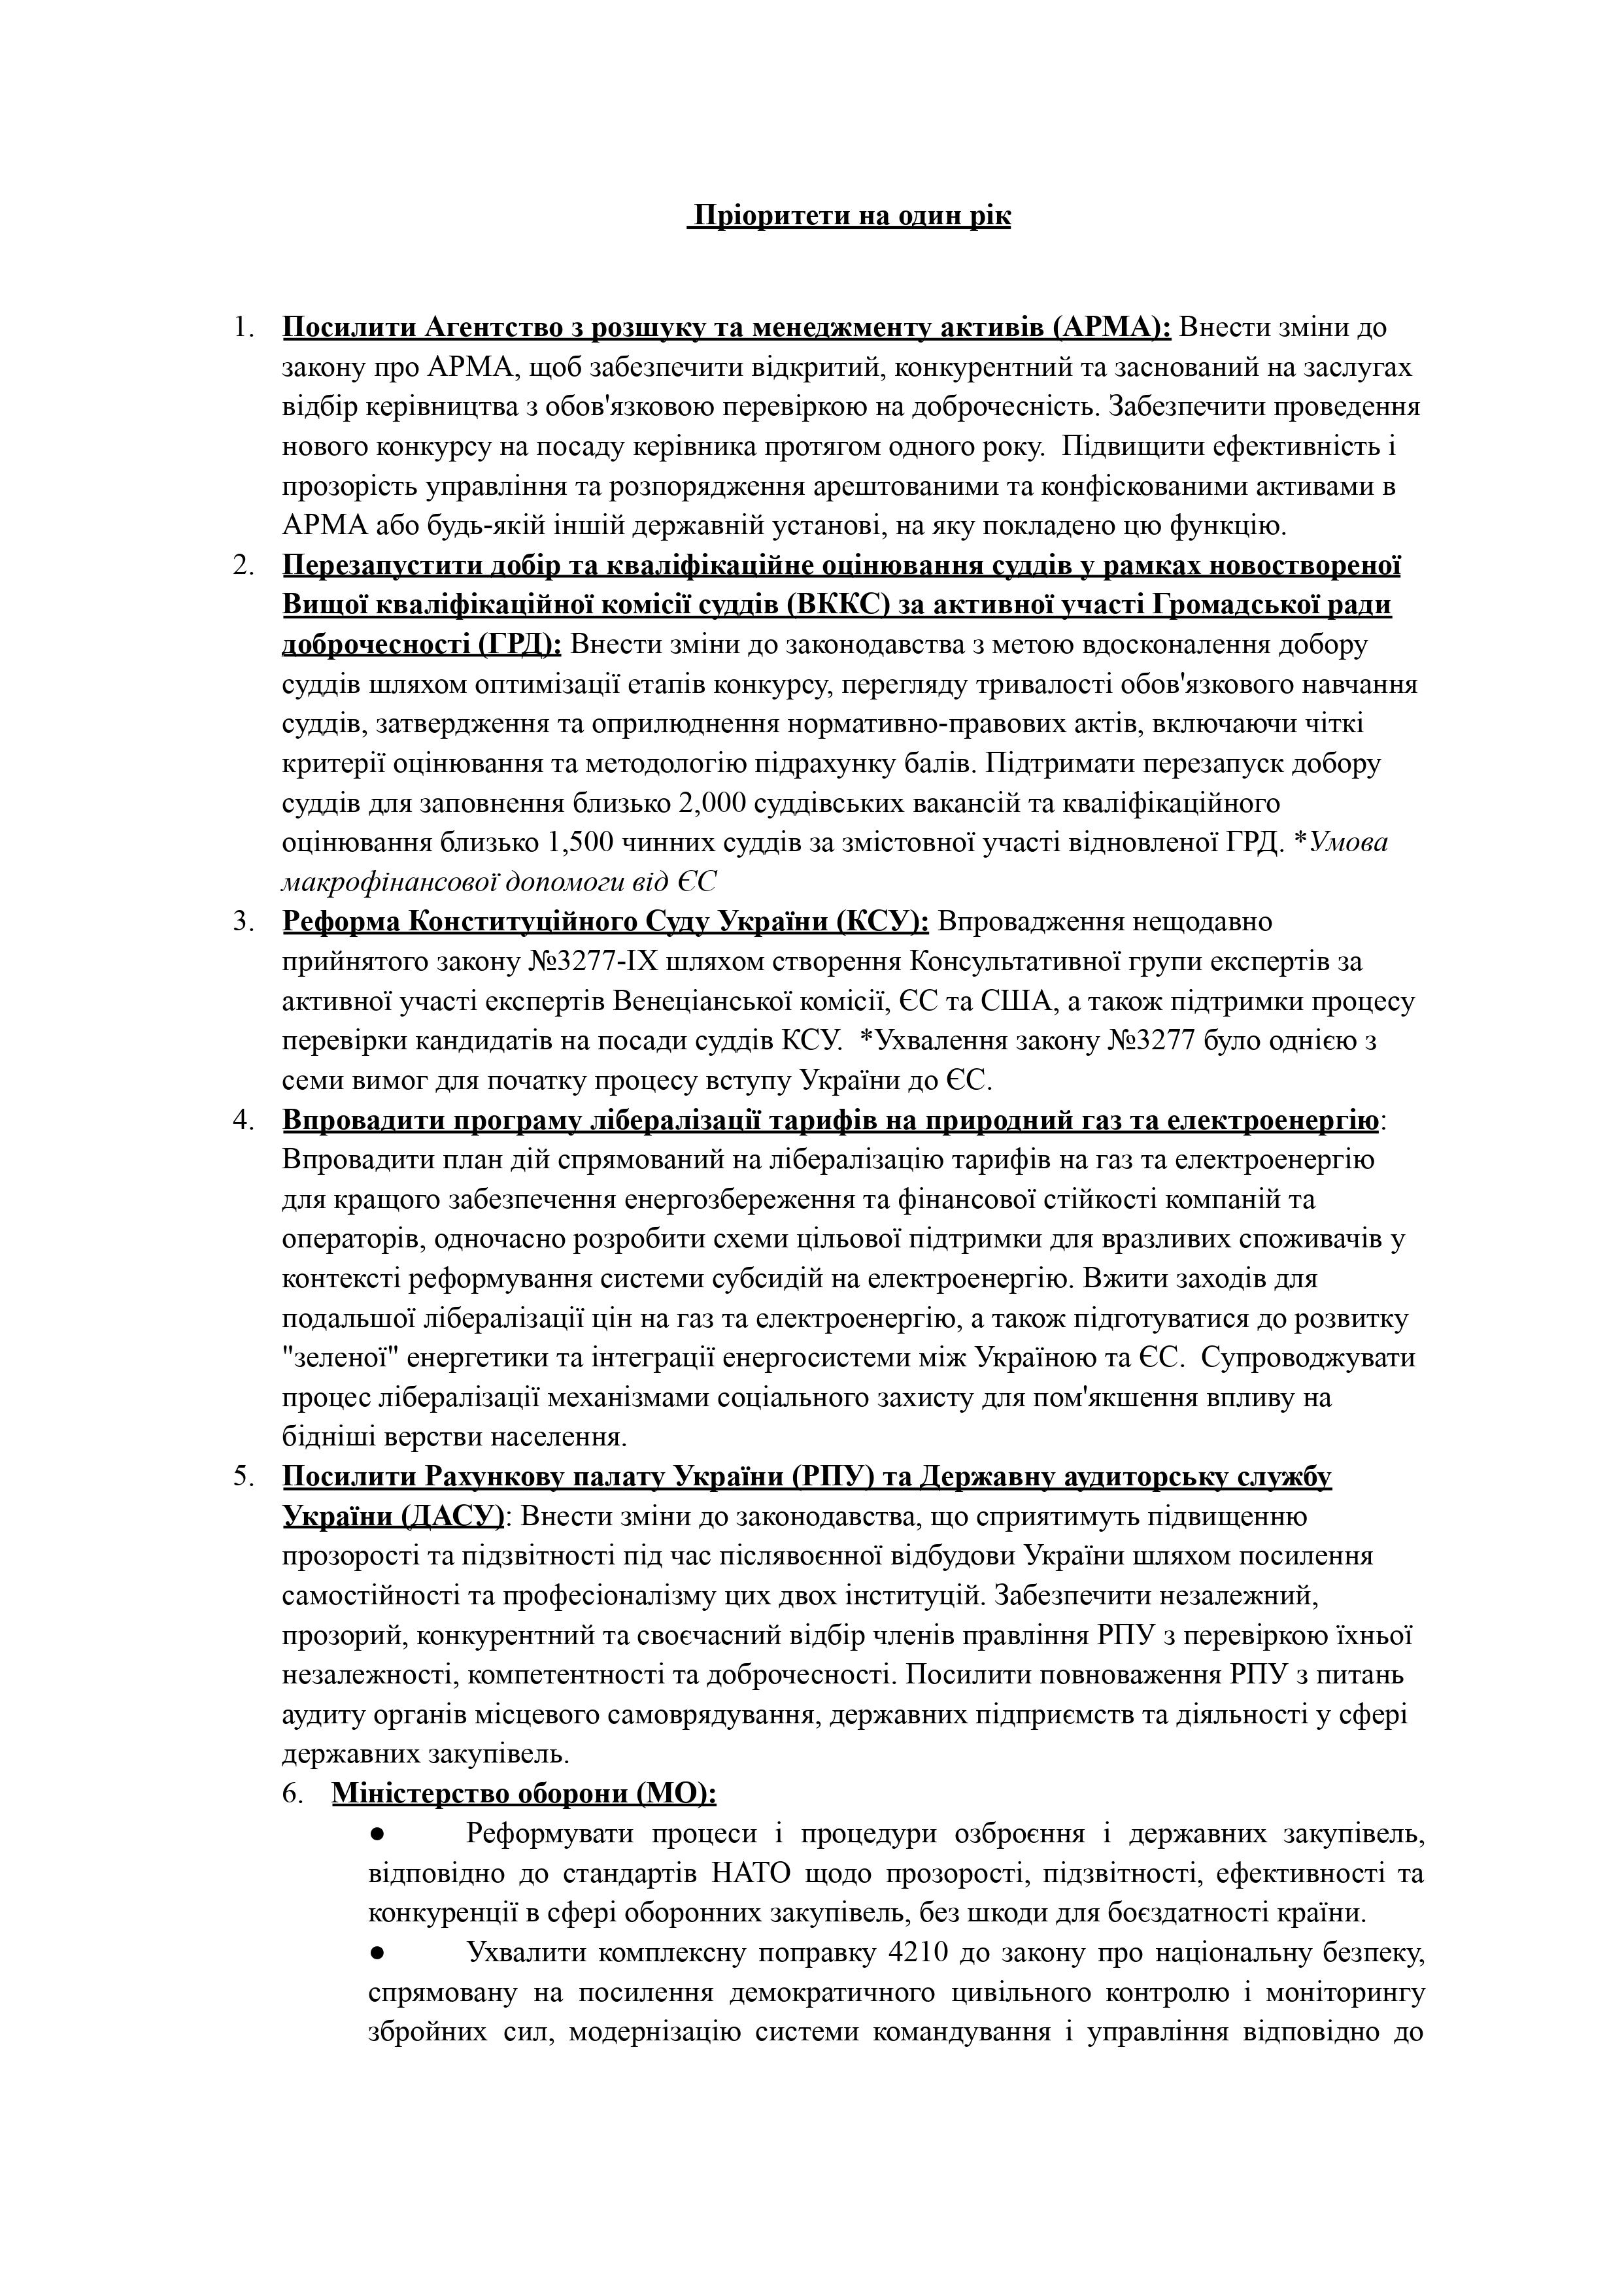 УП: У Байдена назвали перелік реформ для продовження допомоги Україні – документ